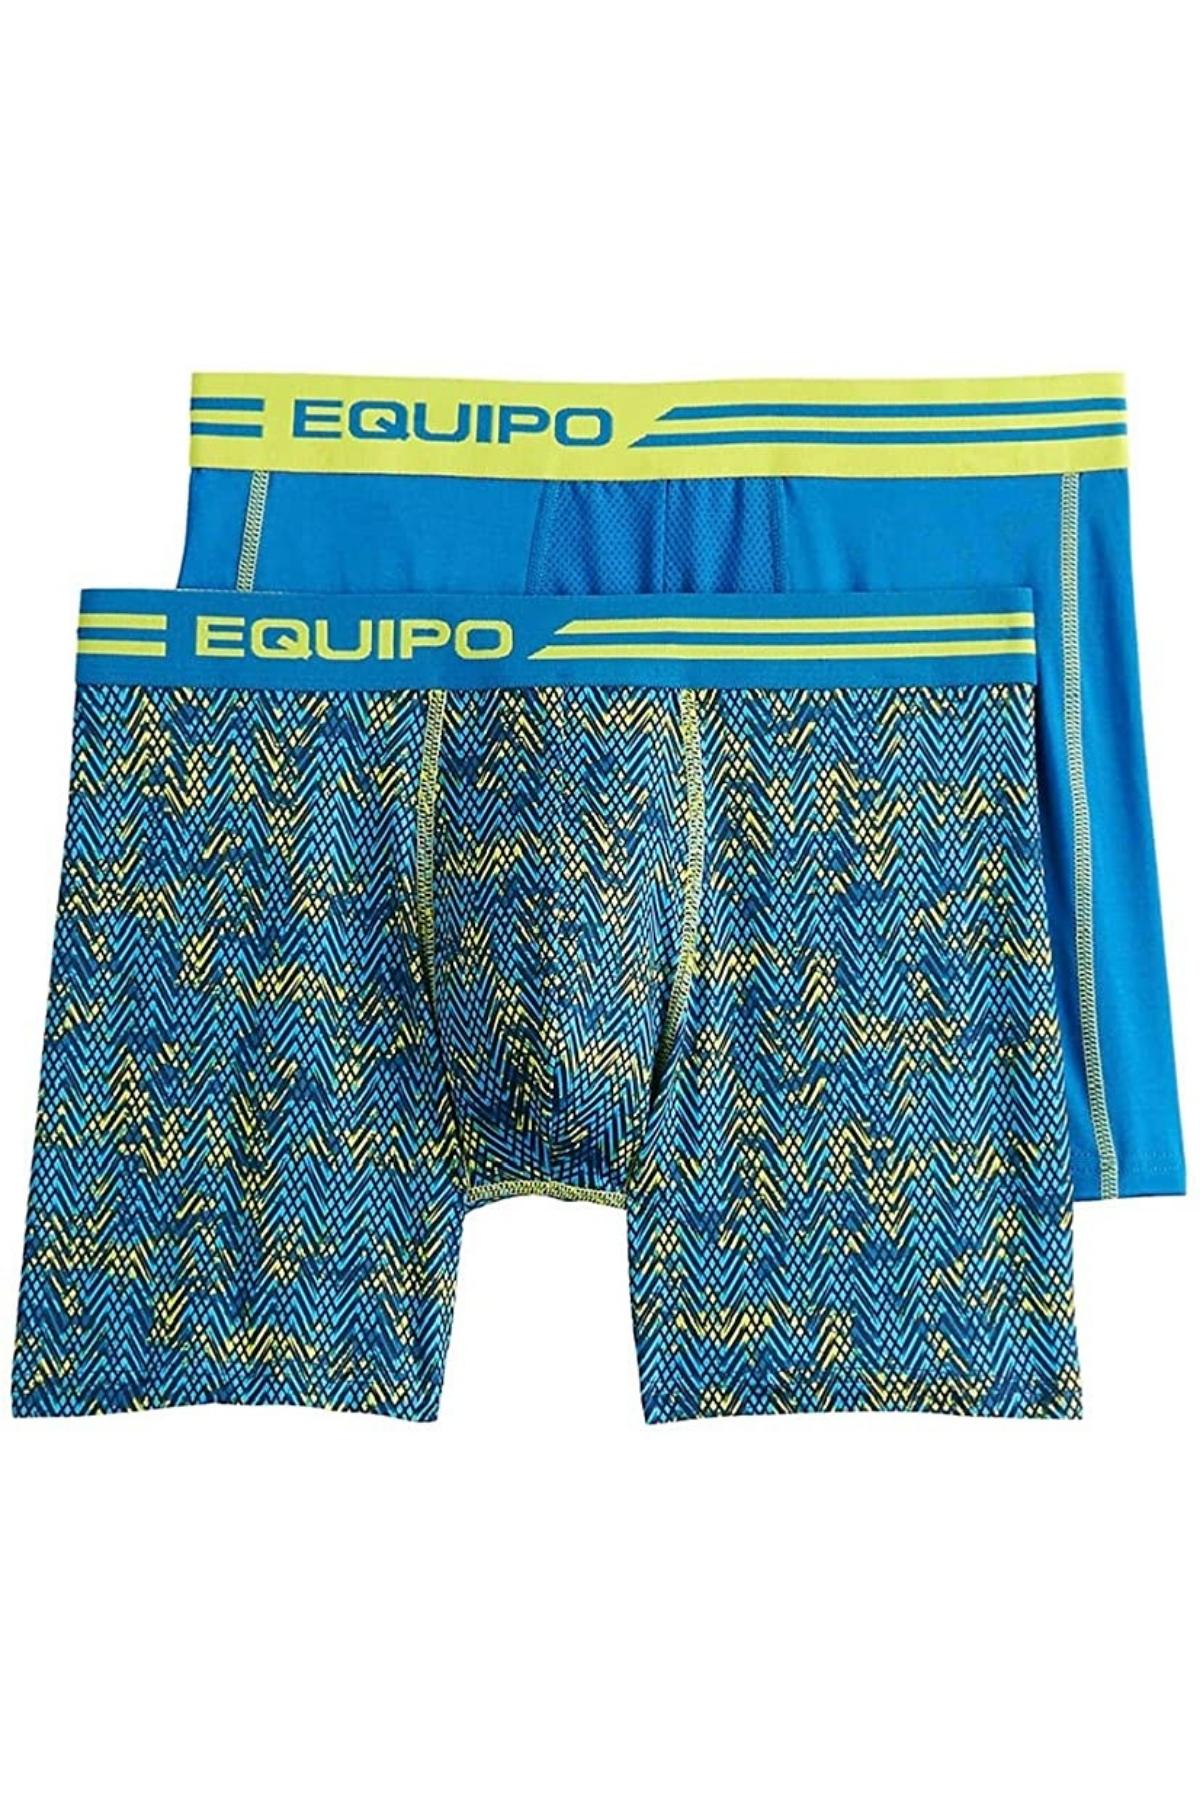 Equipo Men's Underwear